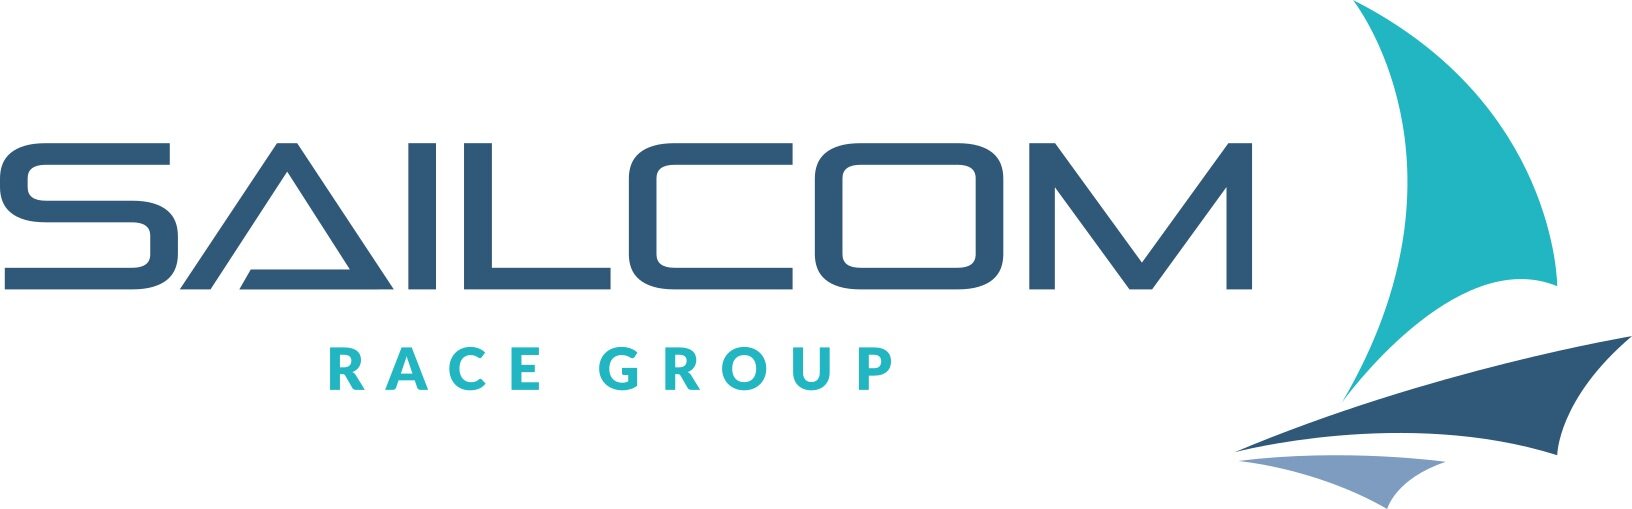 Sailcom+Logo.jpg